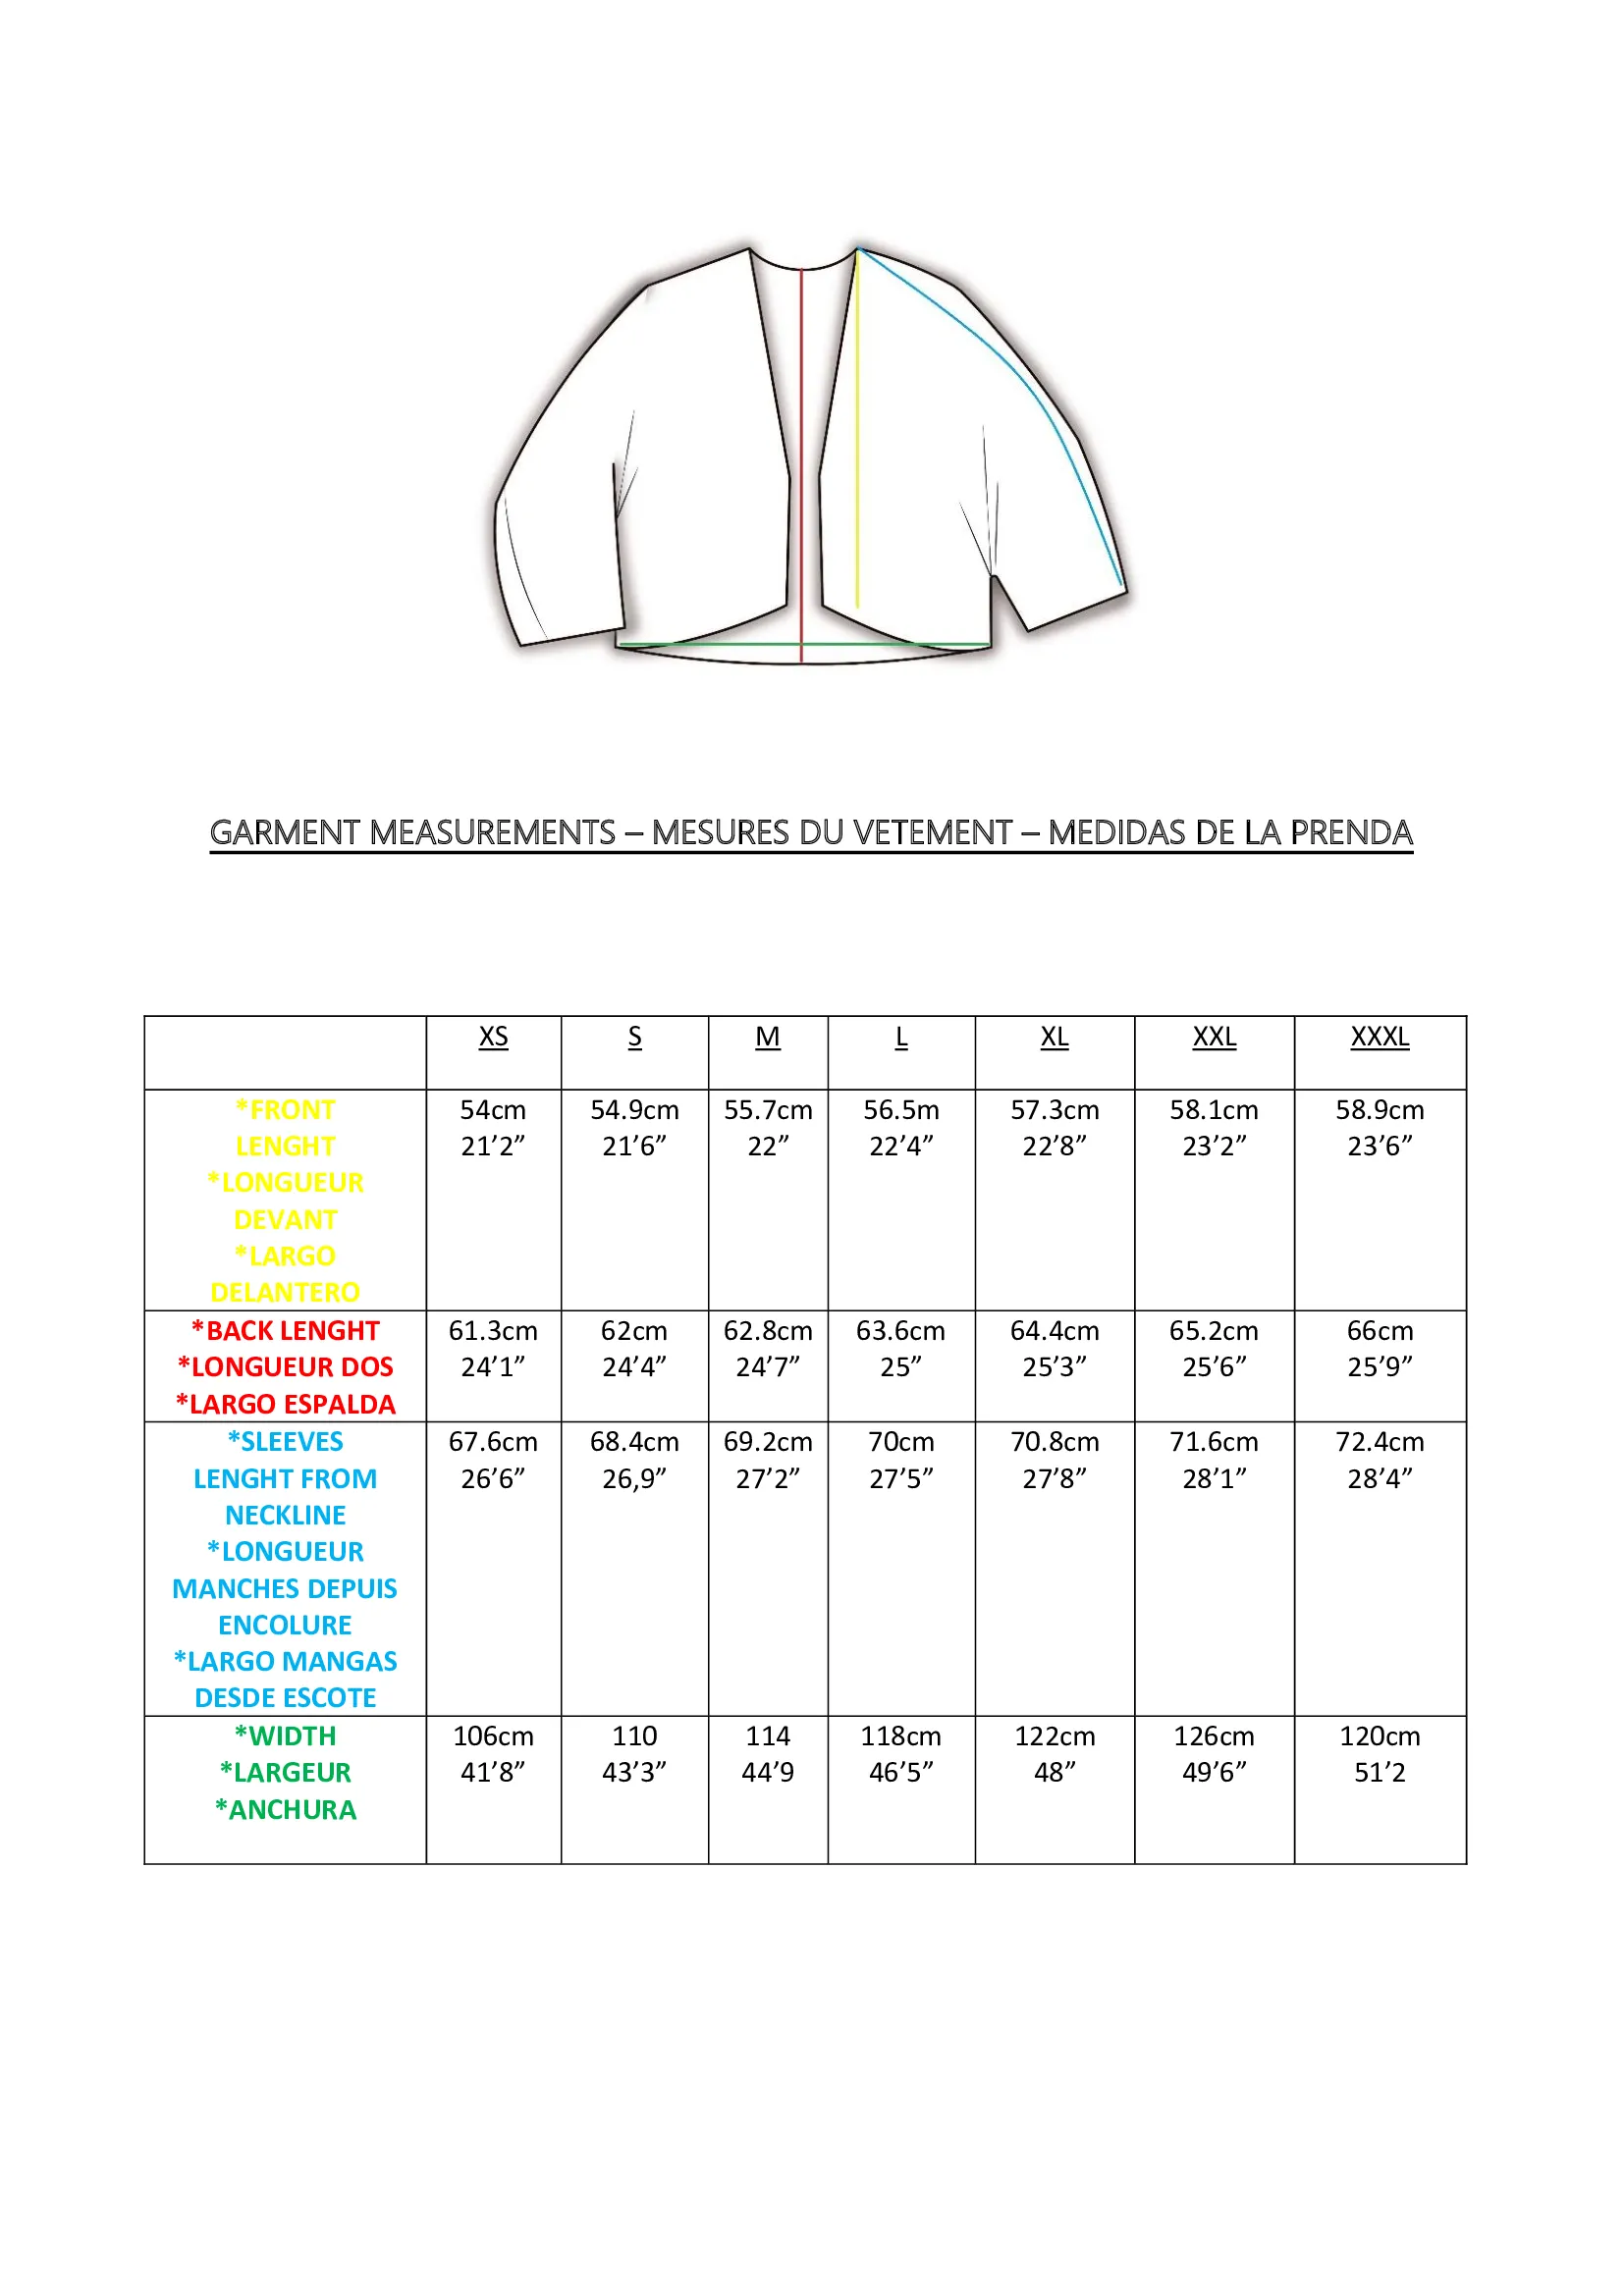 Kimono Jacket Pattern PDF Sewing Instructions Video 